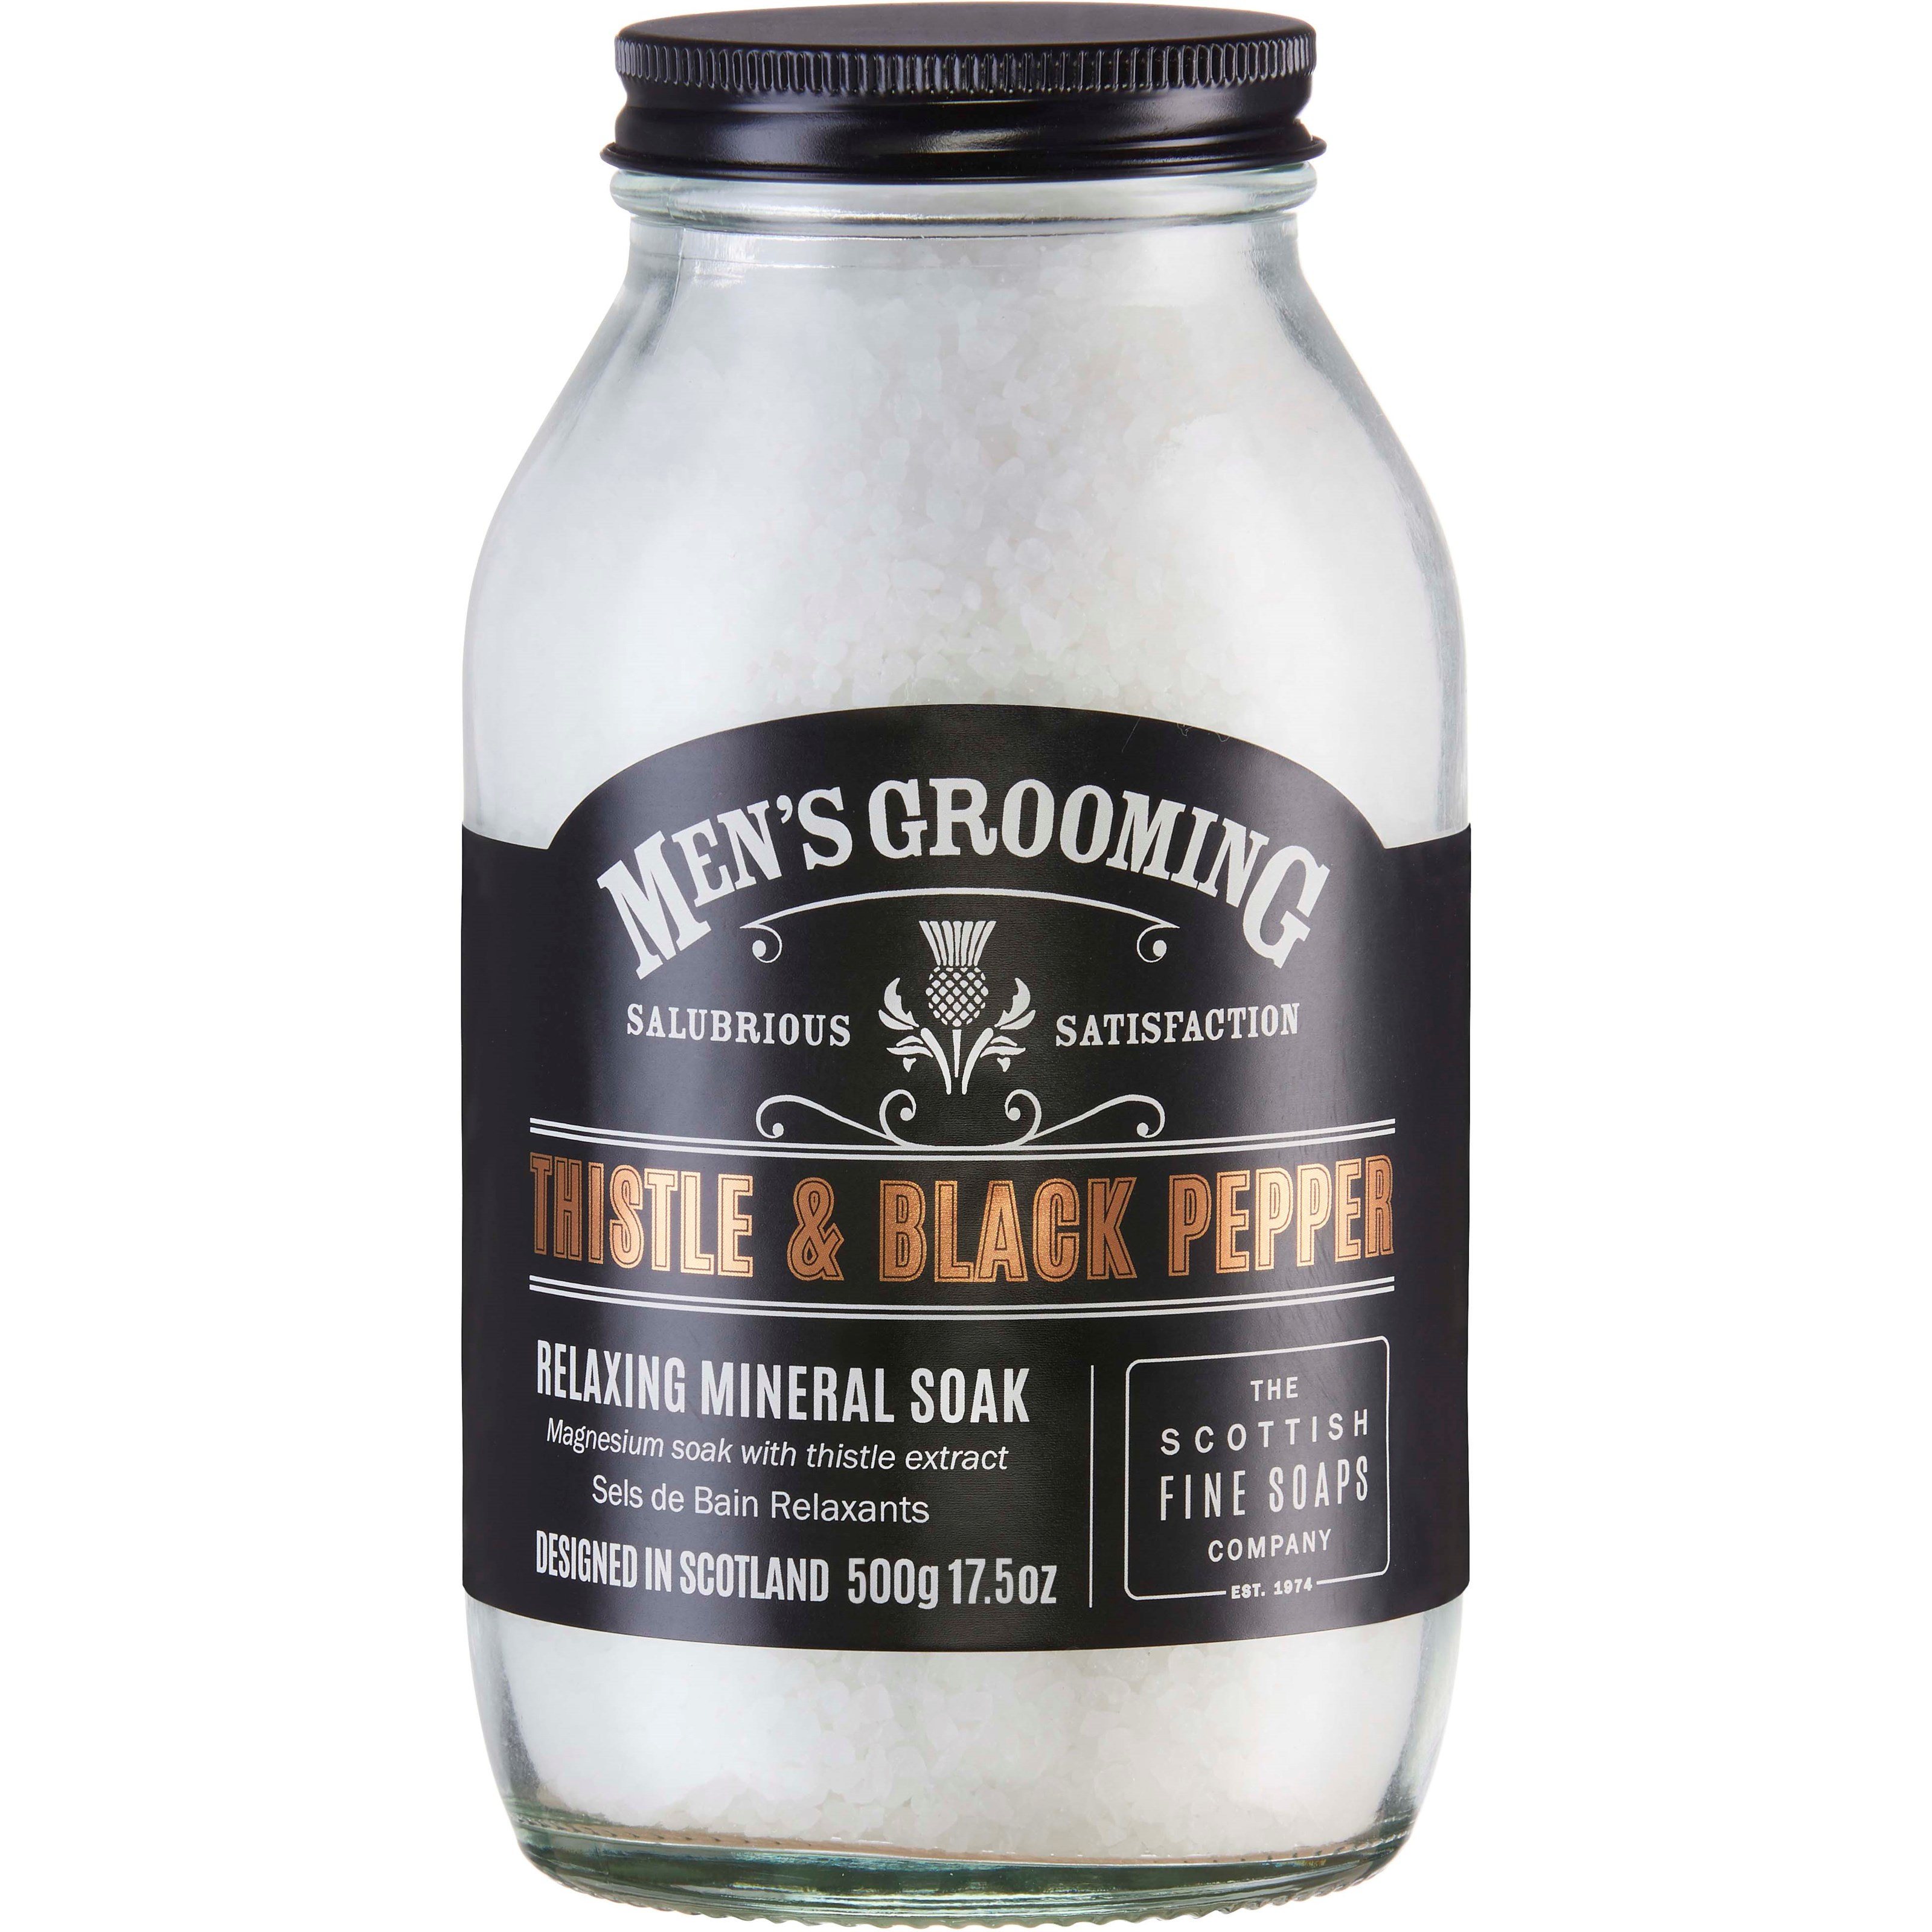 Läs mer om The Scottish Fine Soaps Thistle & Black Pepper Relaxing Mineral Soak